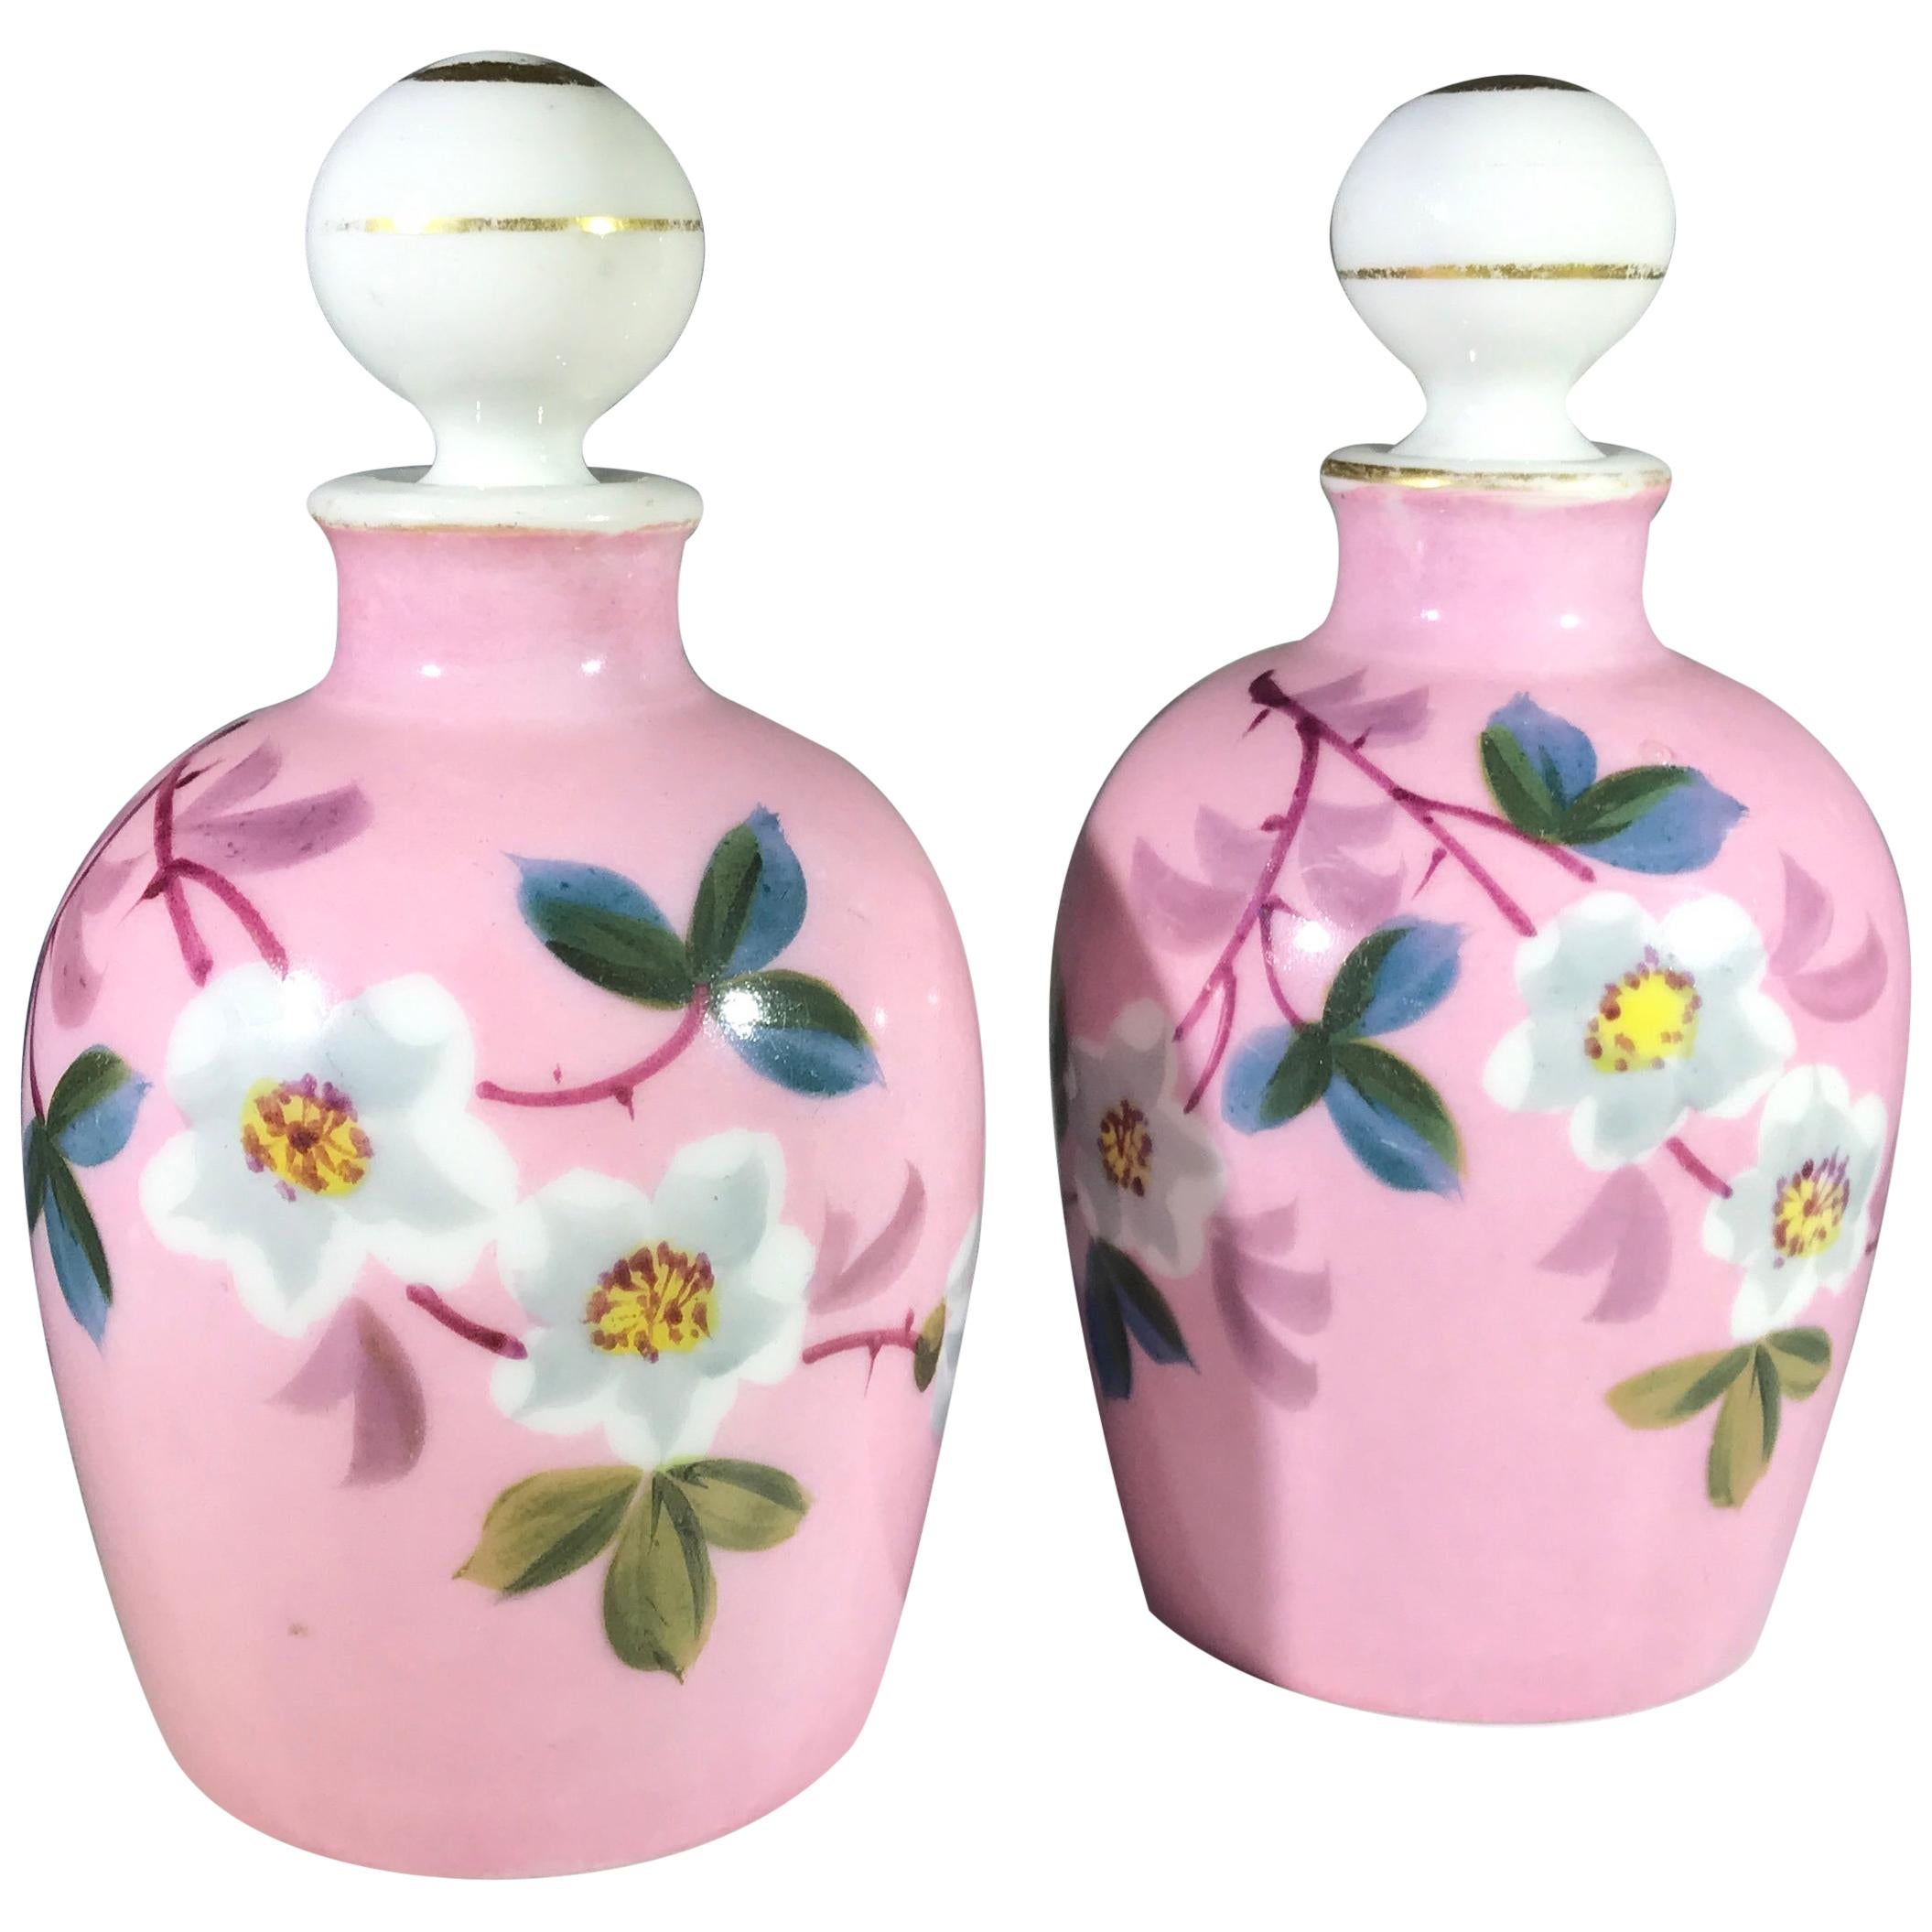 https://a.1stdibscdn.com/pair-antique-charles-fields-haviland-limoges-porcelain-blossom-perfume-bottles-for-sale/1121189/f_211113421603515624145/21111342_master.jpg